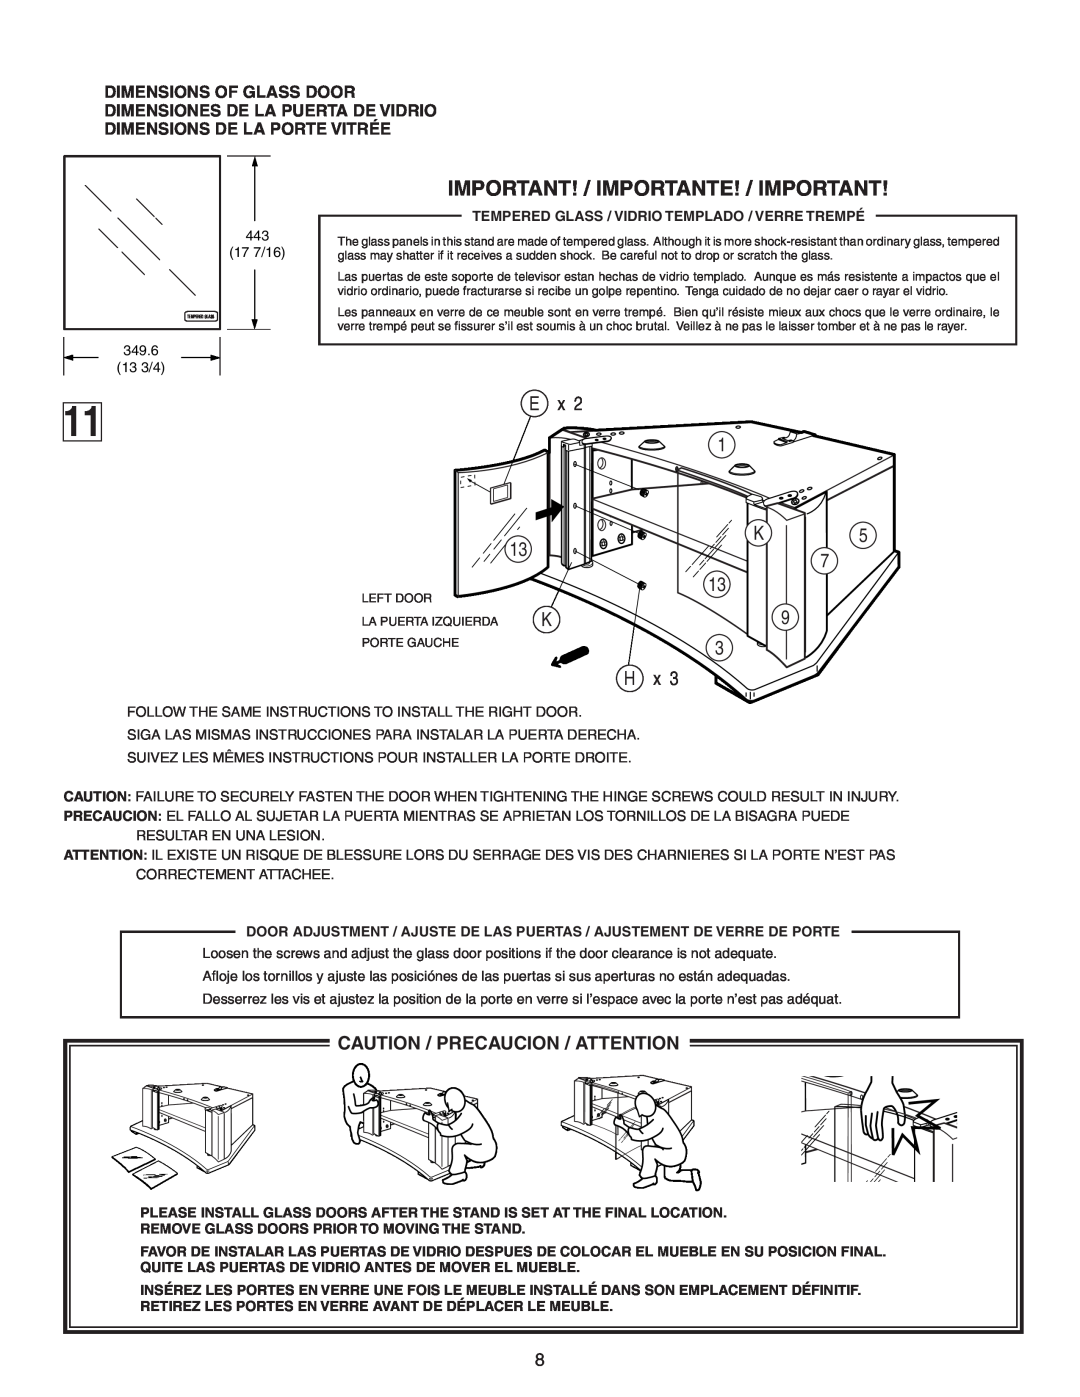 Sony SU-32F2 manual Important! / Importante! / Important, 13 3 H, Caution / Precaucion / Attention 